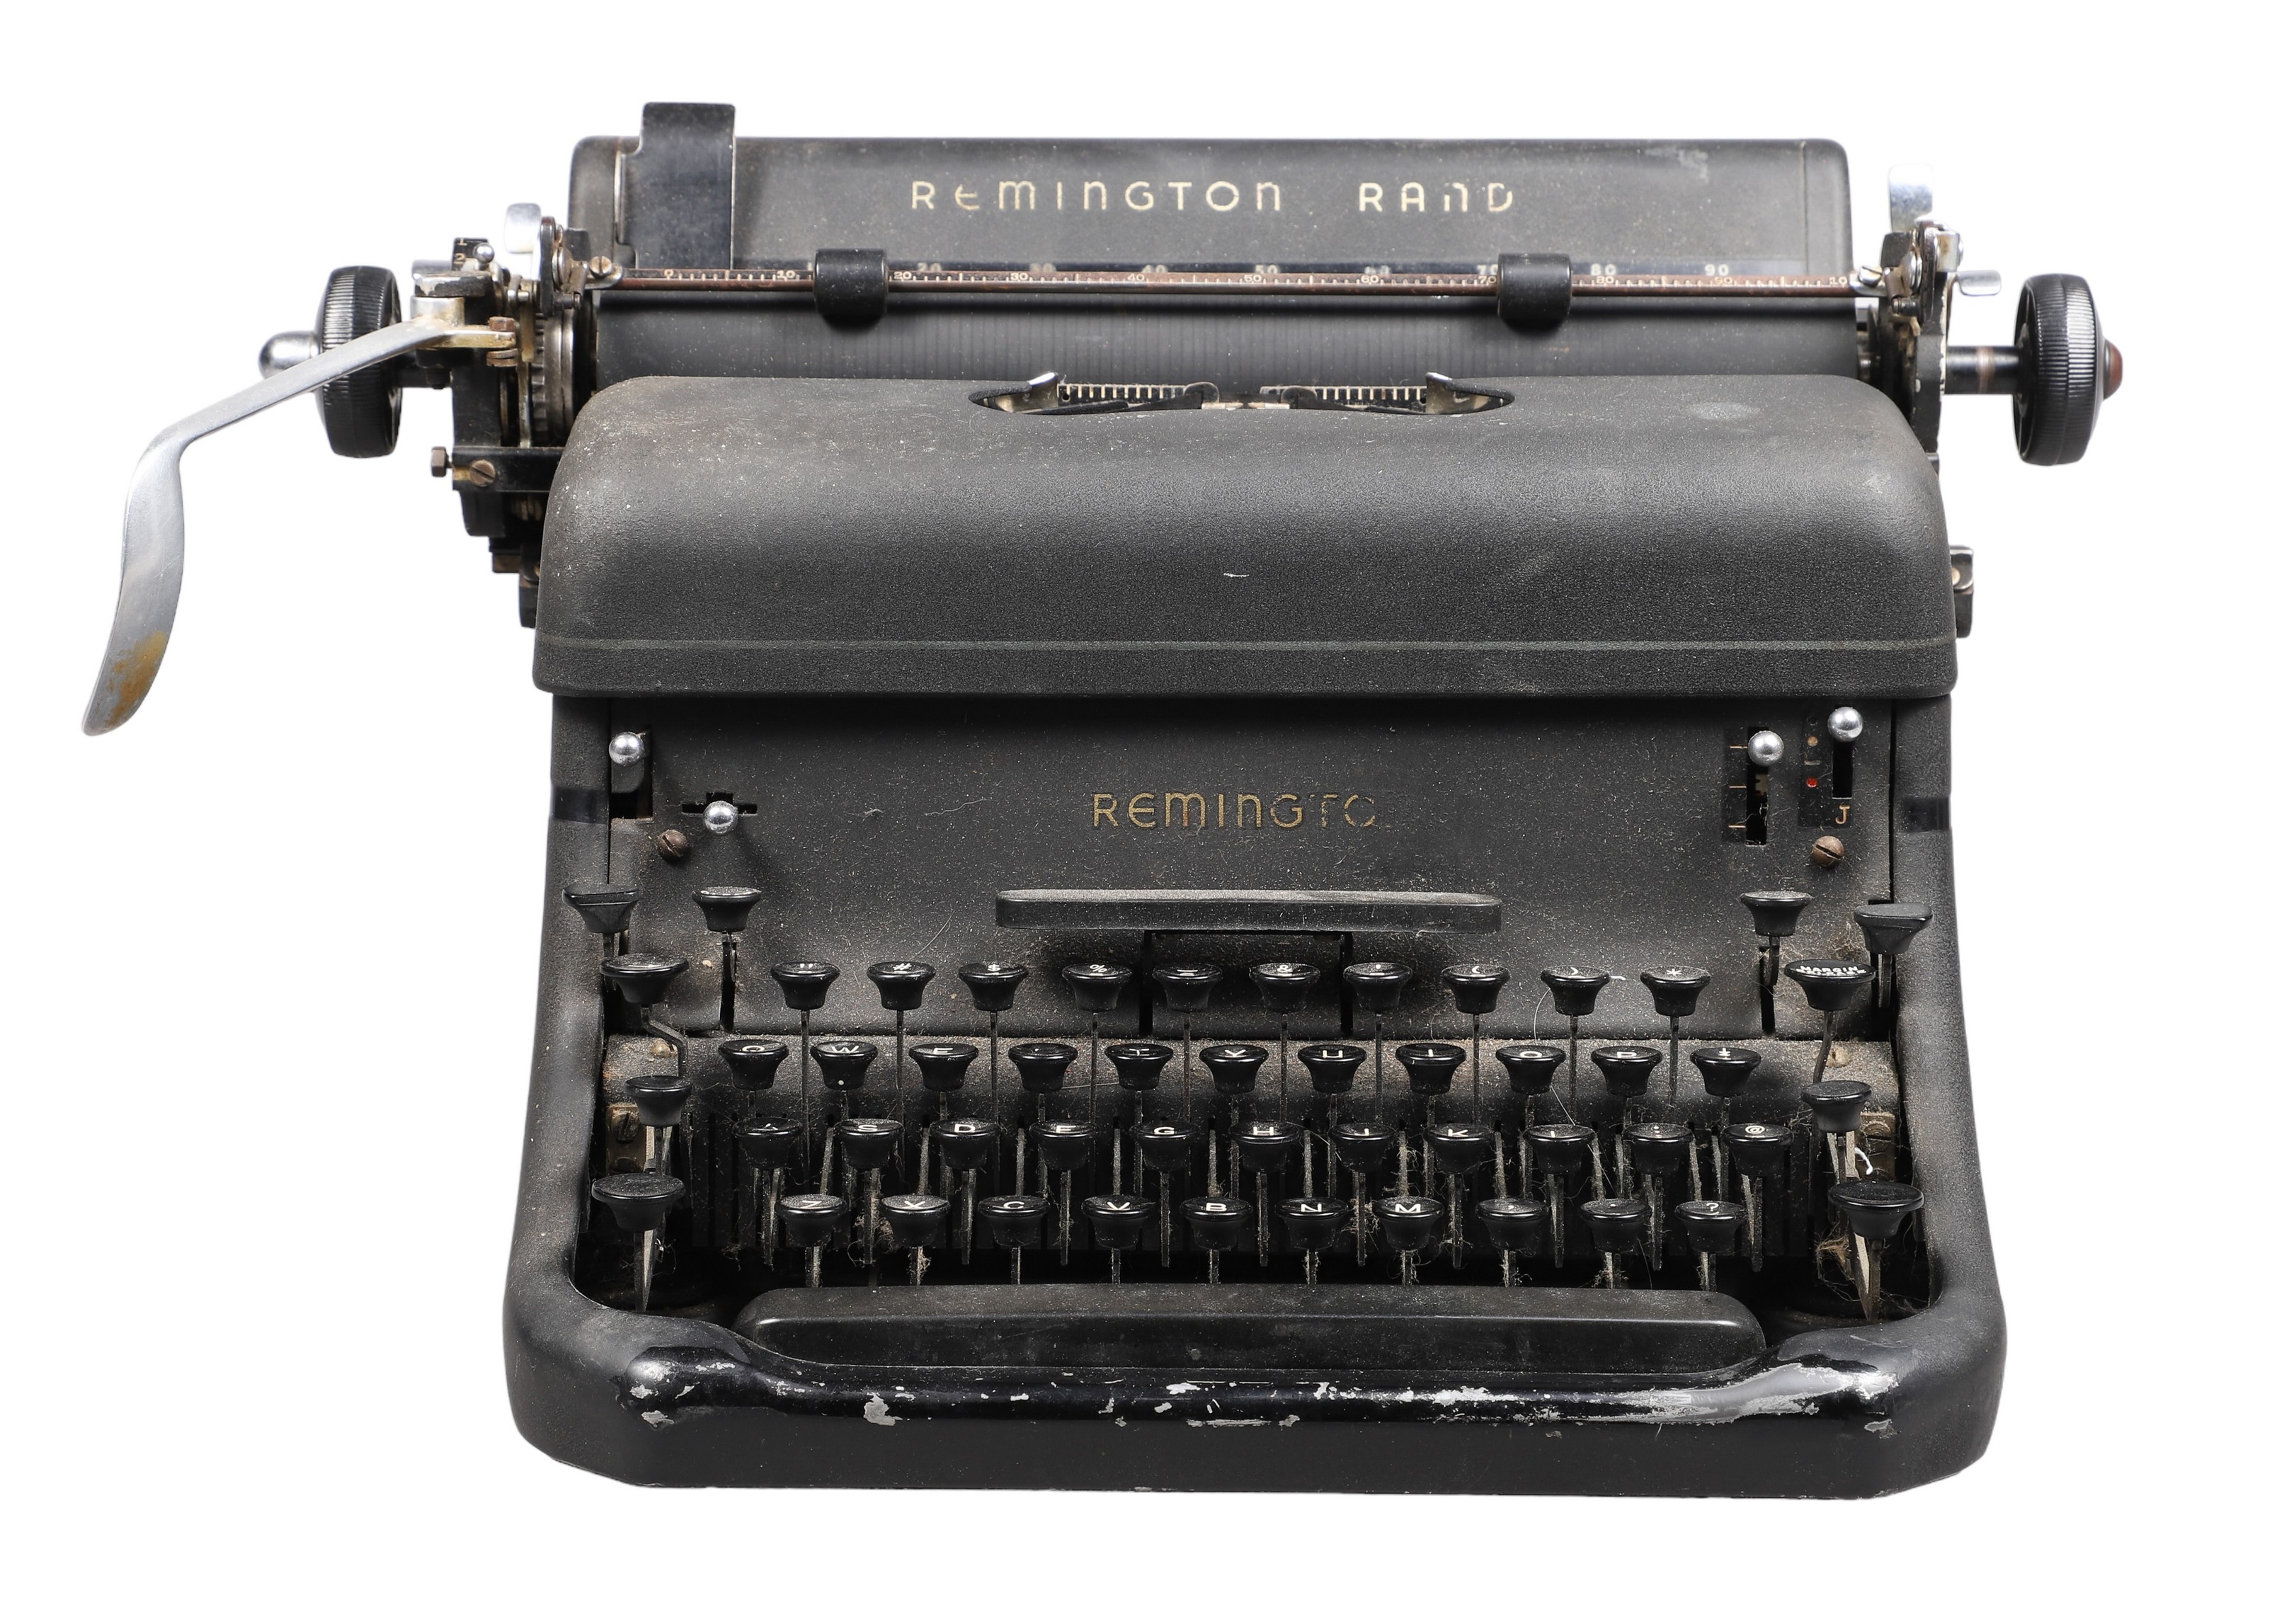 Vintage Remington Rand typewriter,